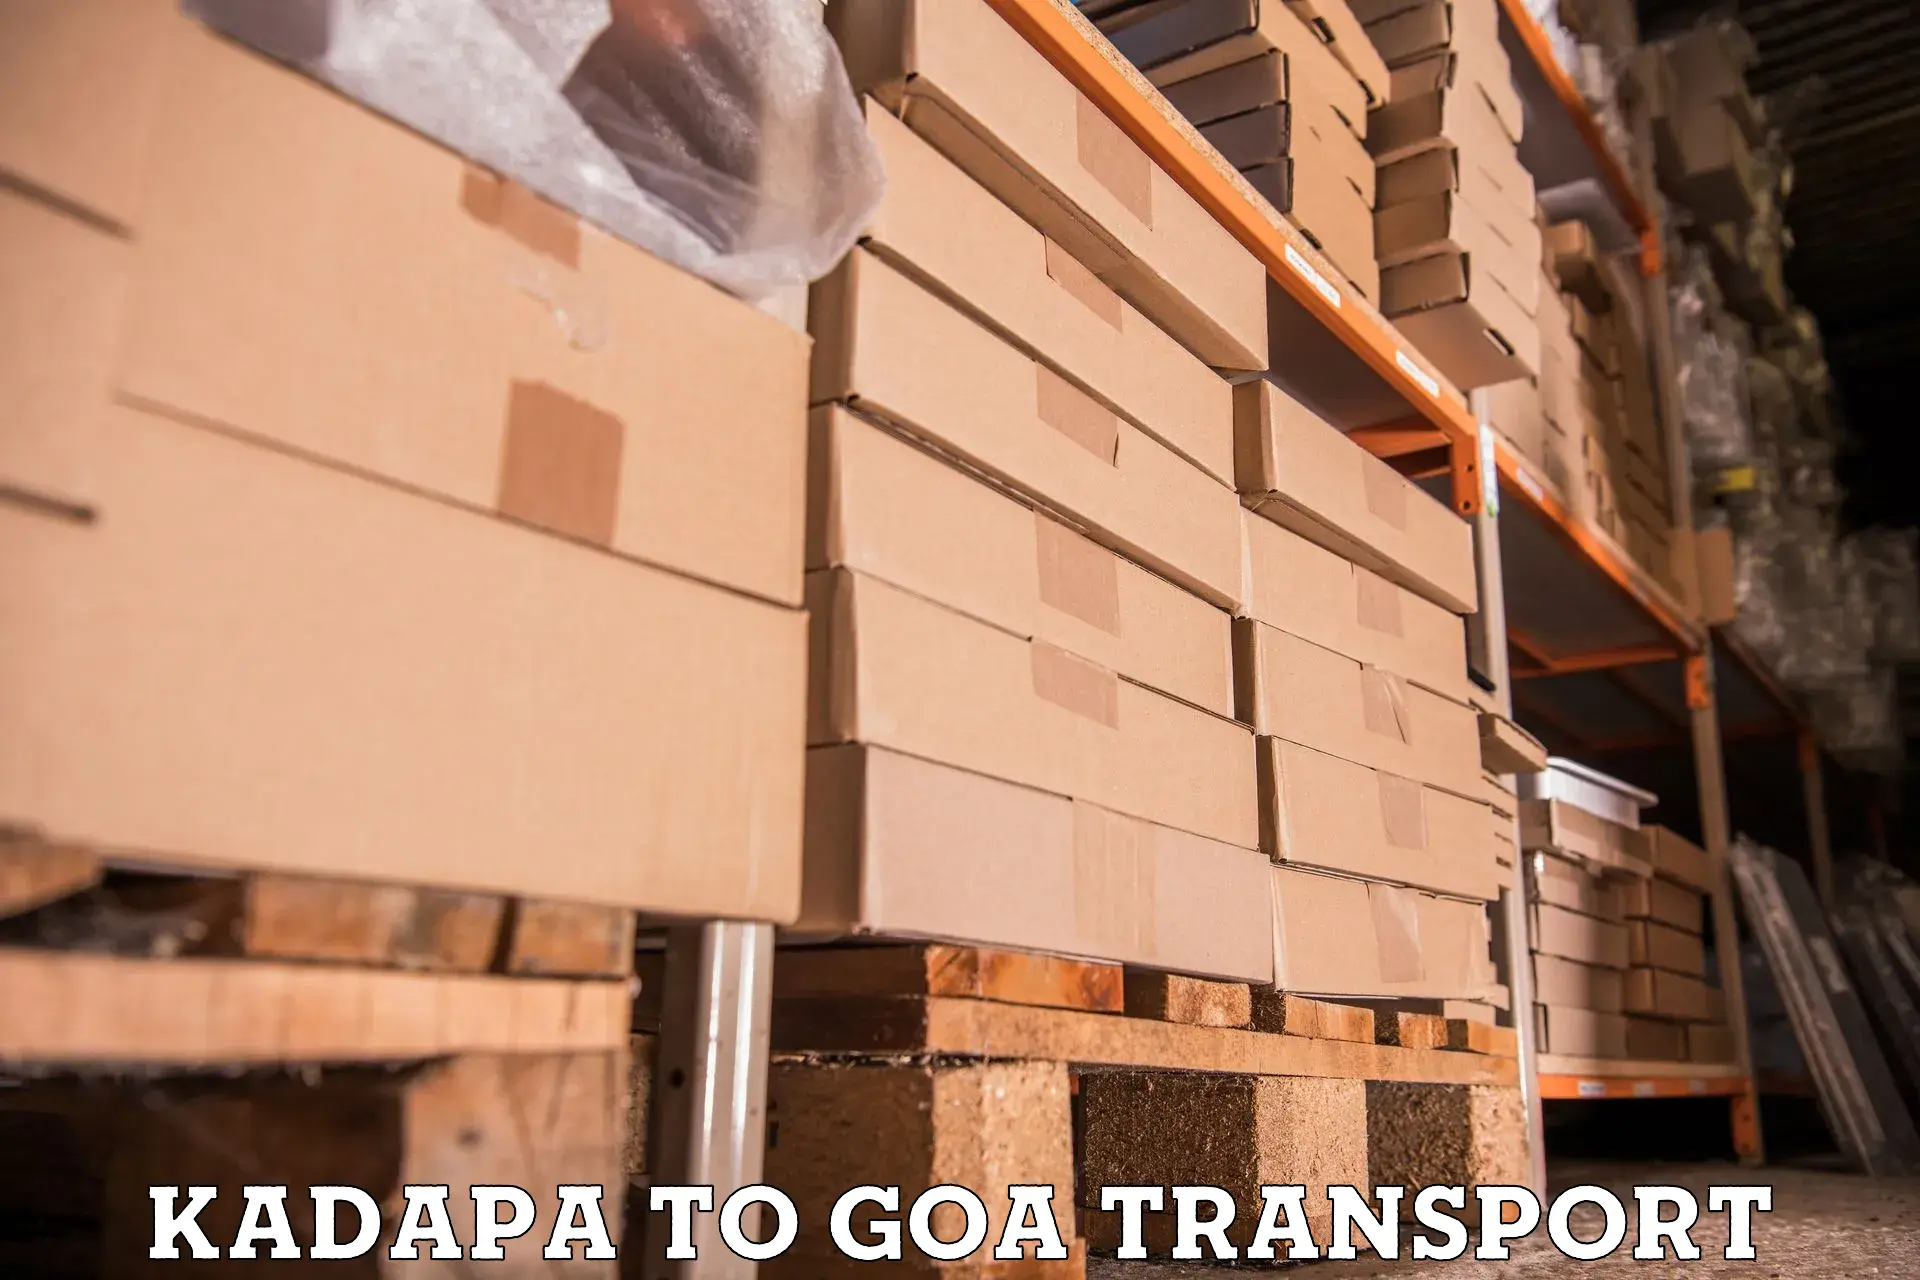 Bike shipping service Kadapa to Goa